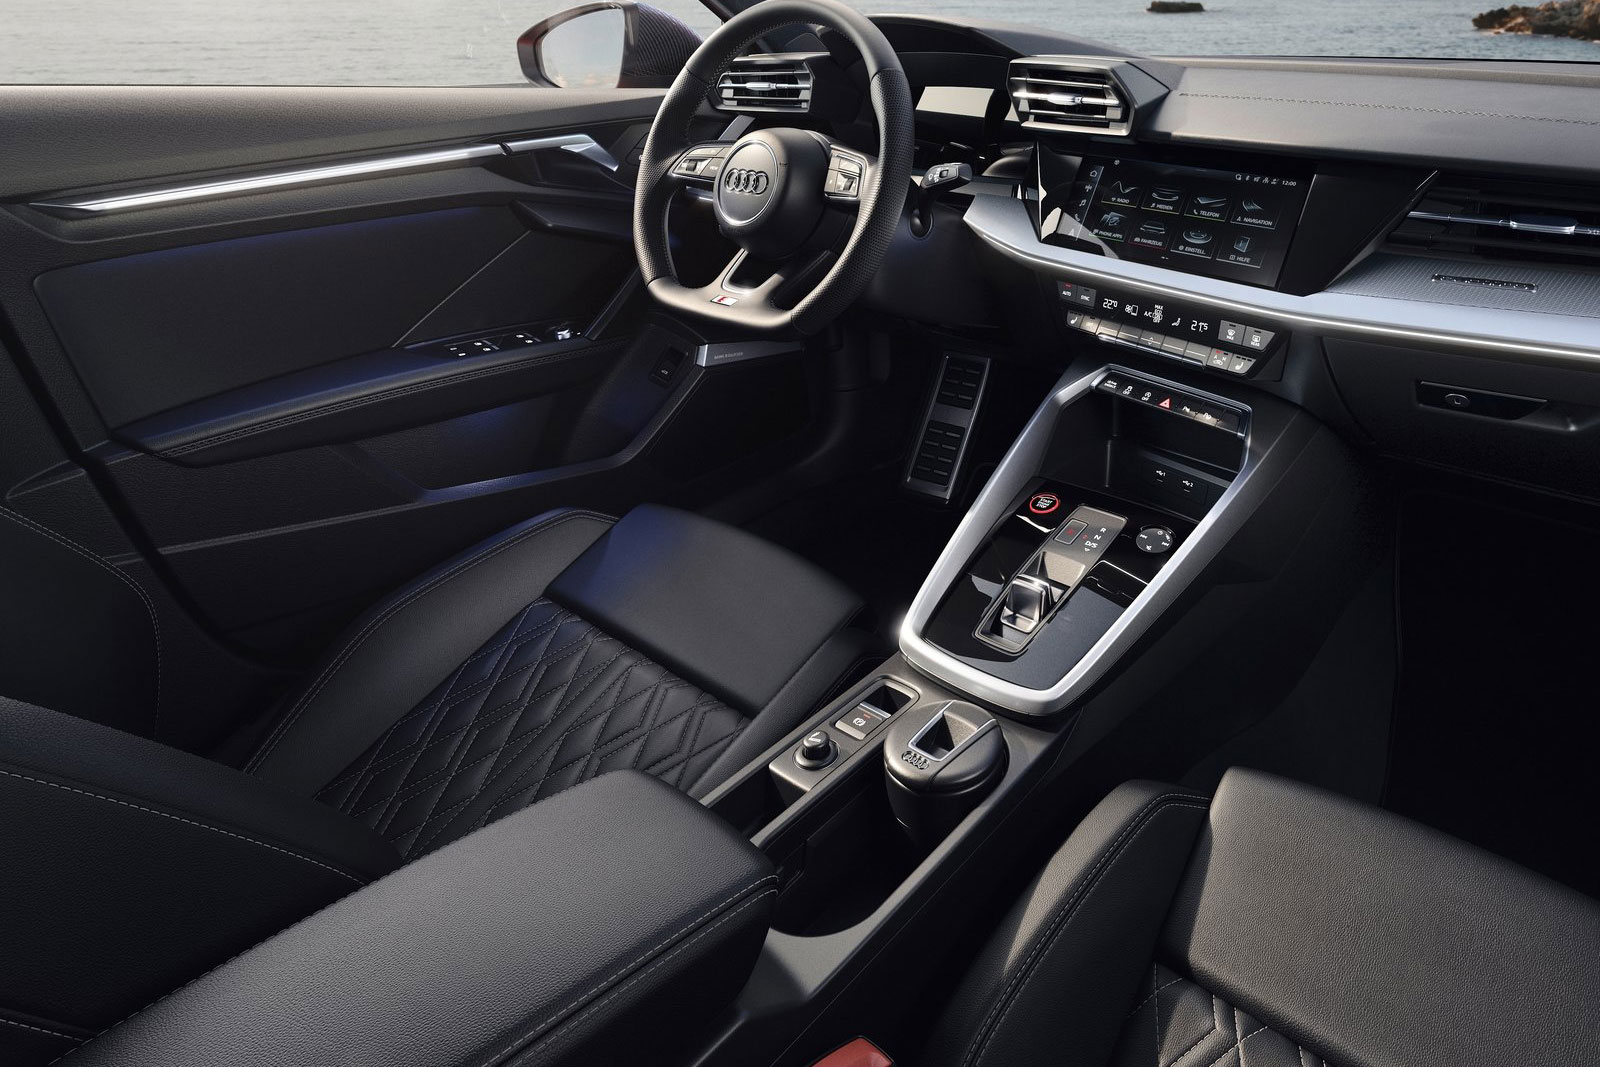 Neuer Audi S3 (2020): Überraschend konservativ